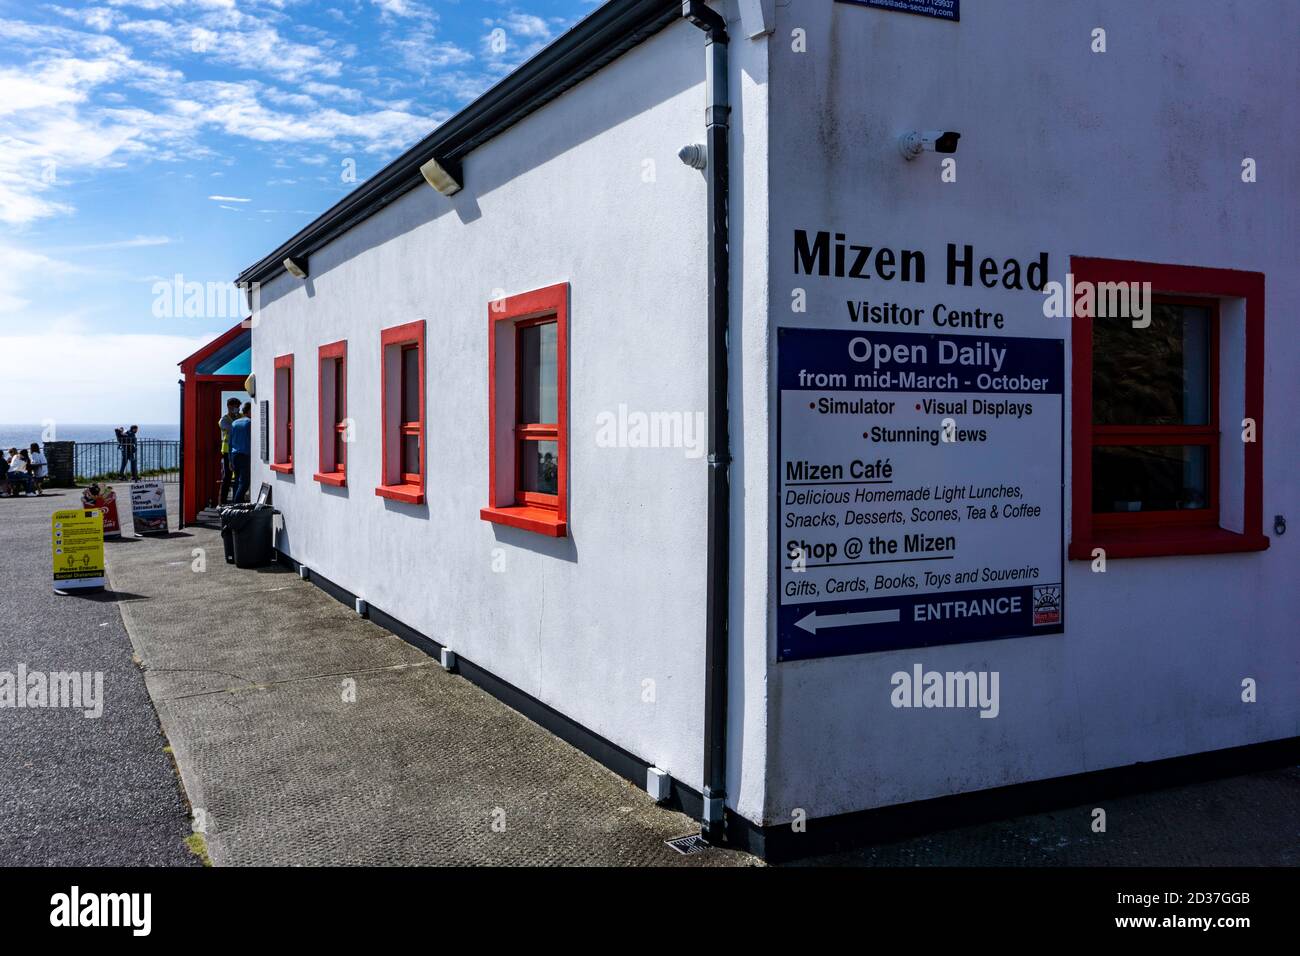 Mizen Head Visitor Centre et musée à Cork, Irlande. Dédié à l'histoire de la sécurité en mer en référence aux aides à la navigation. Banque D'Images